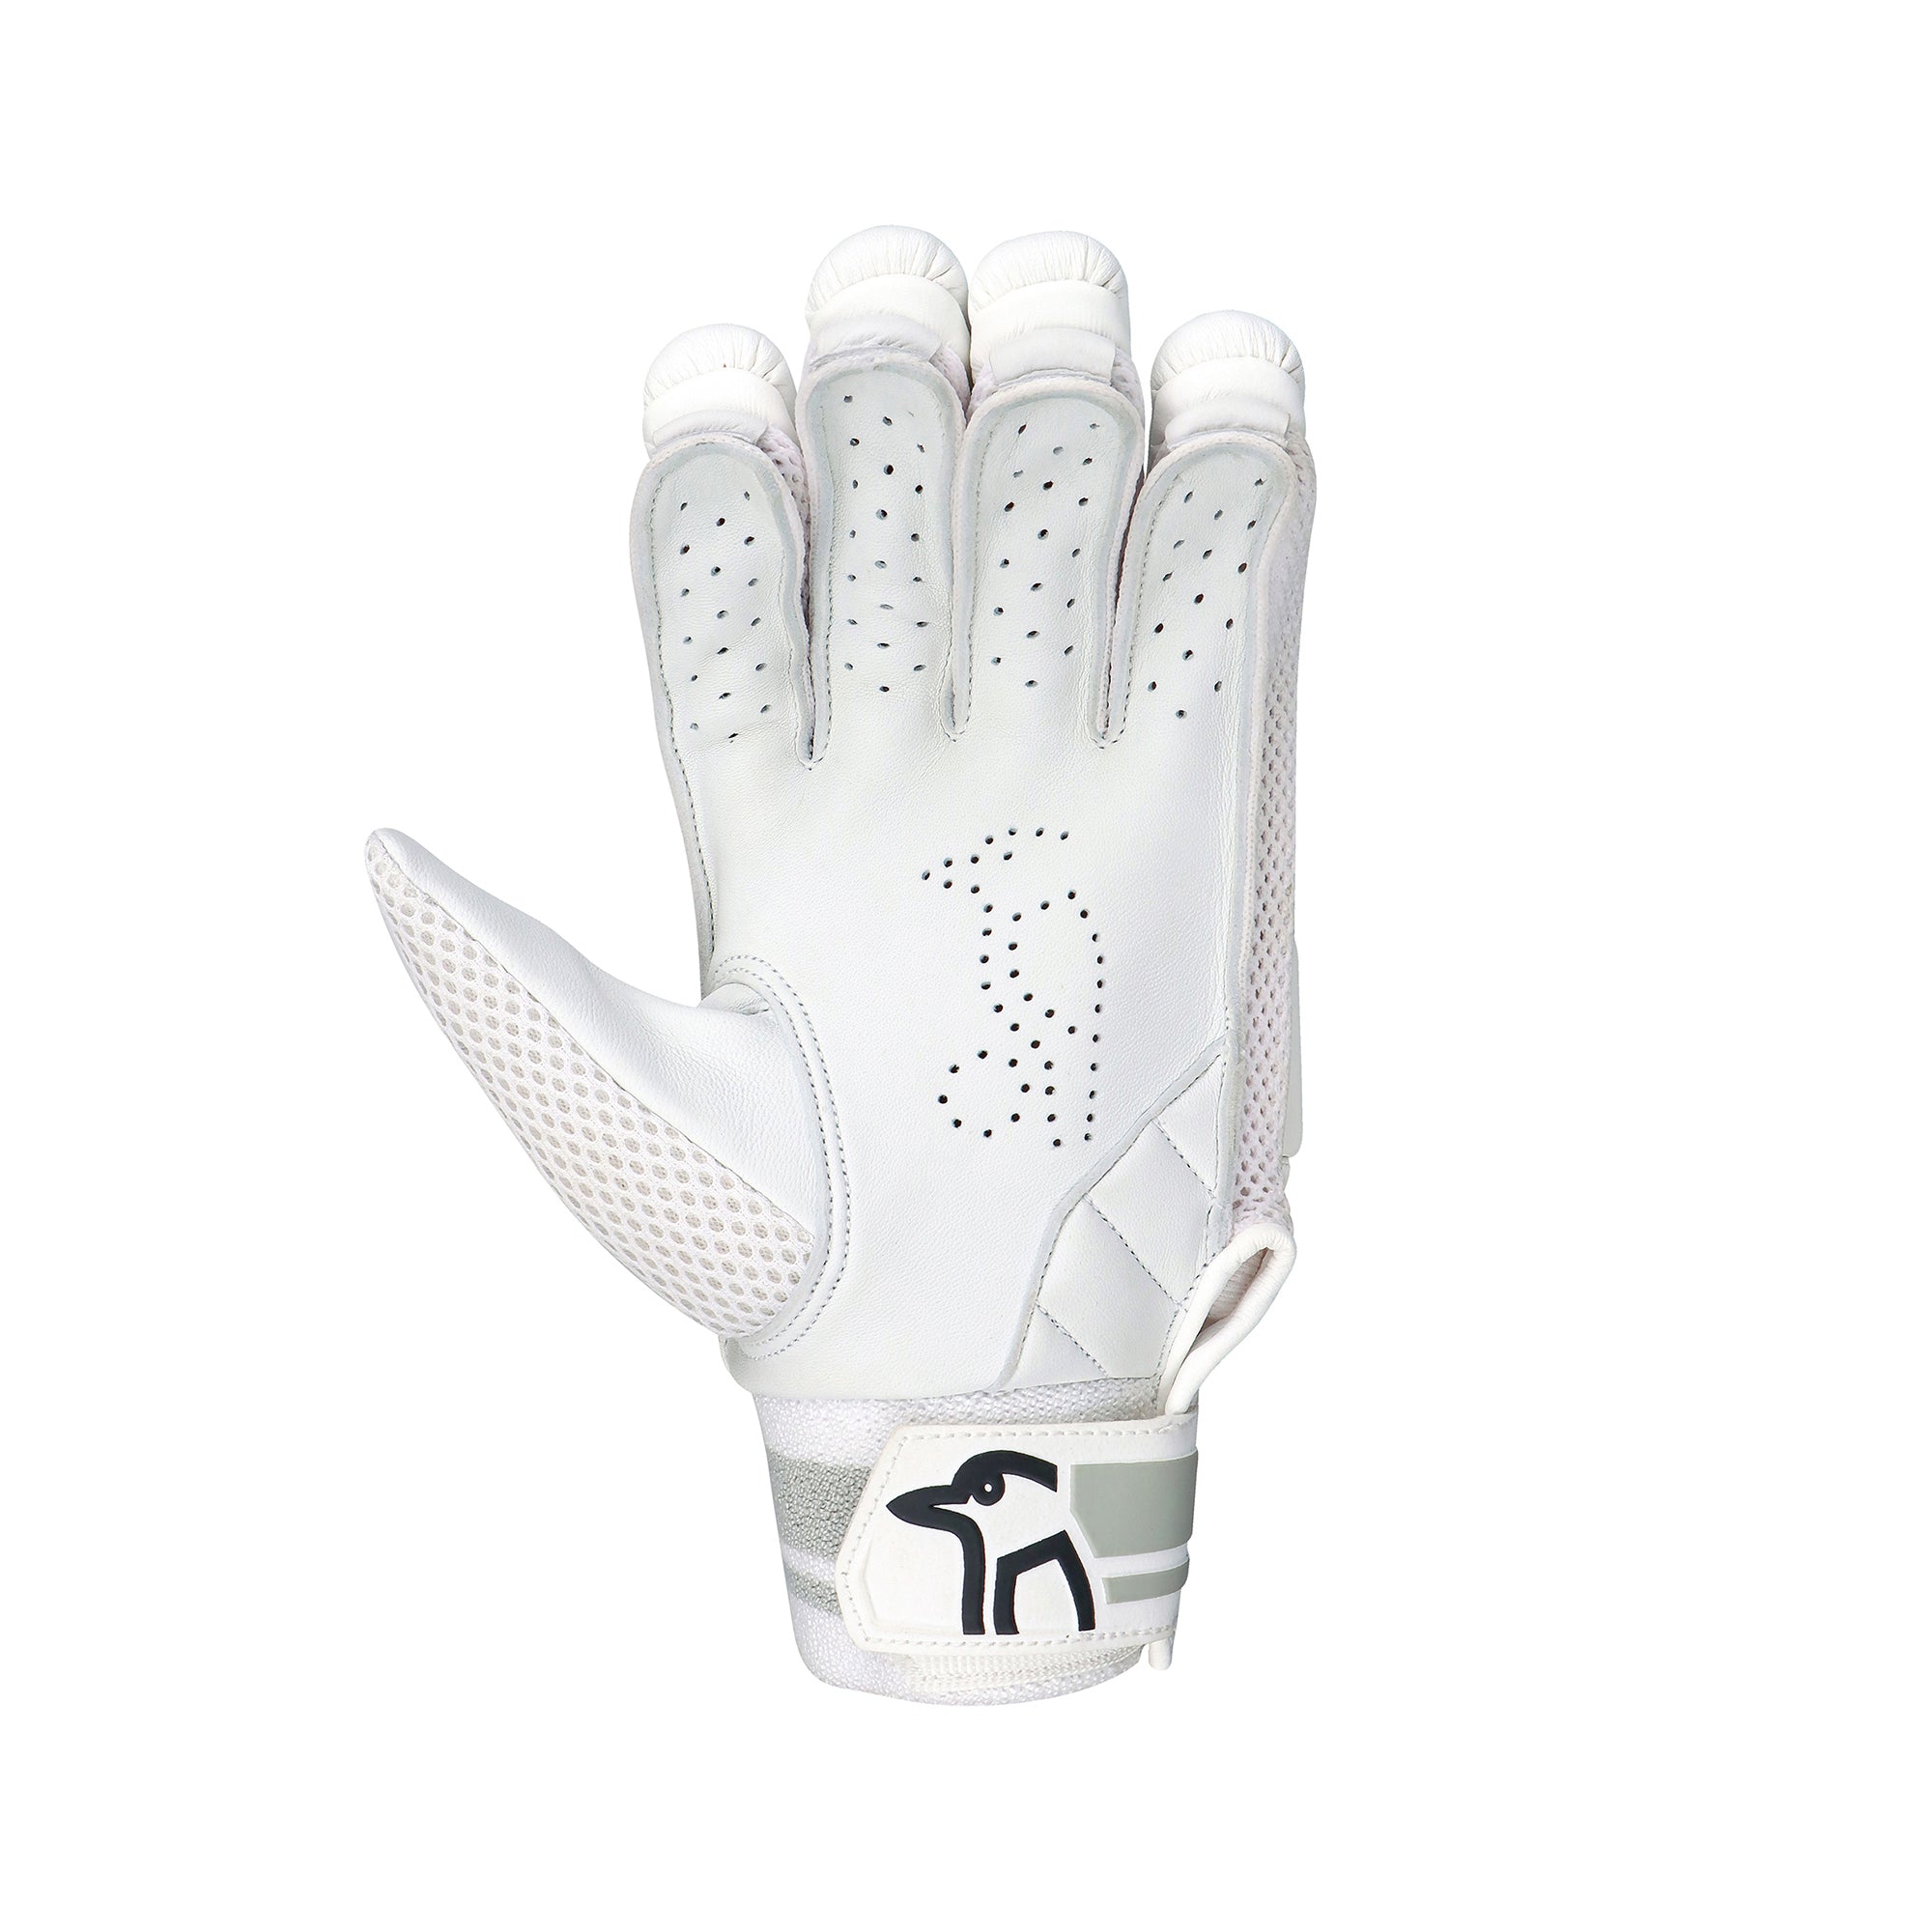 Kookaburra Ghost Pro 1.0 Batting Gloves - The Cricket Warehouse